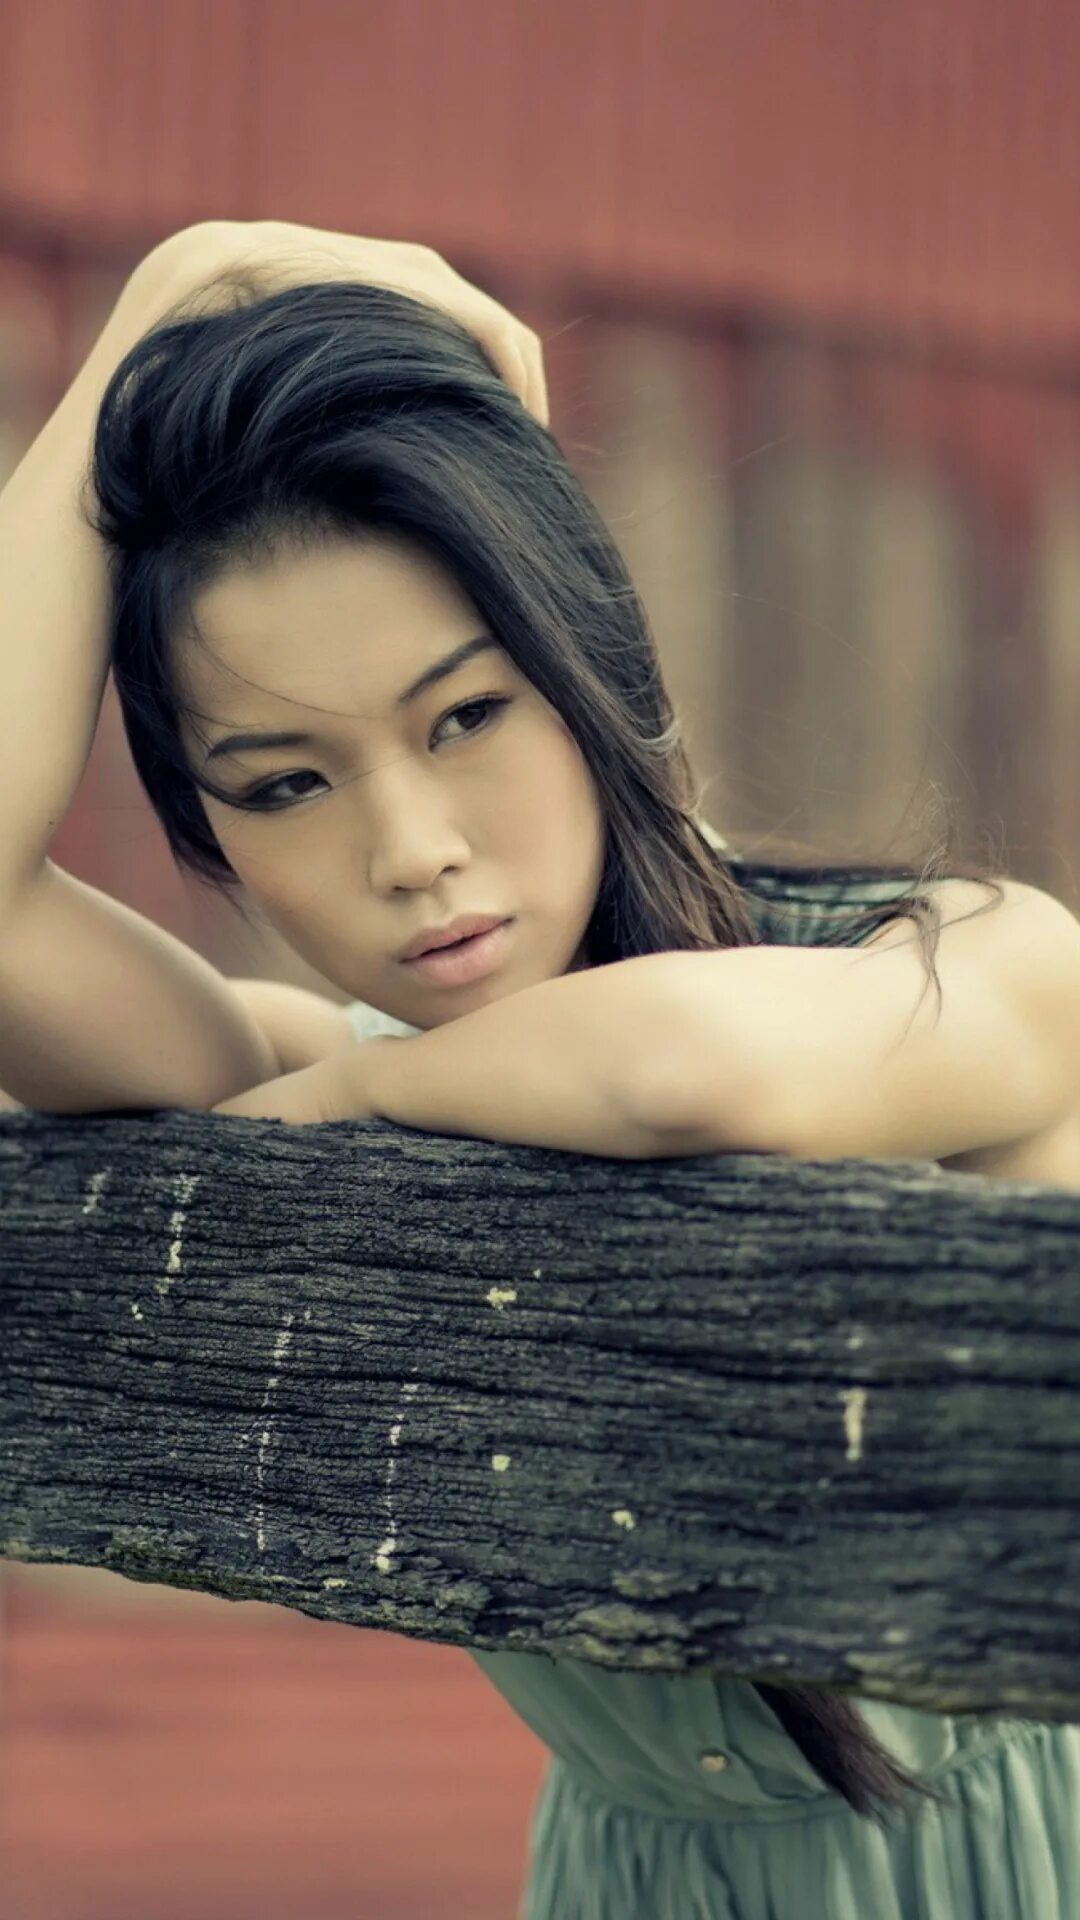 Красивые азиатки. Красивые девушки Азии. Очень красивая девушка азиатка. Самые красивые азиатские девушки. Включи азиатское